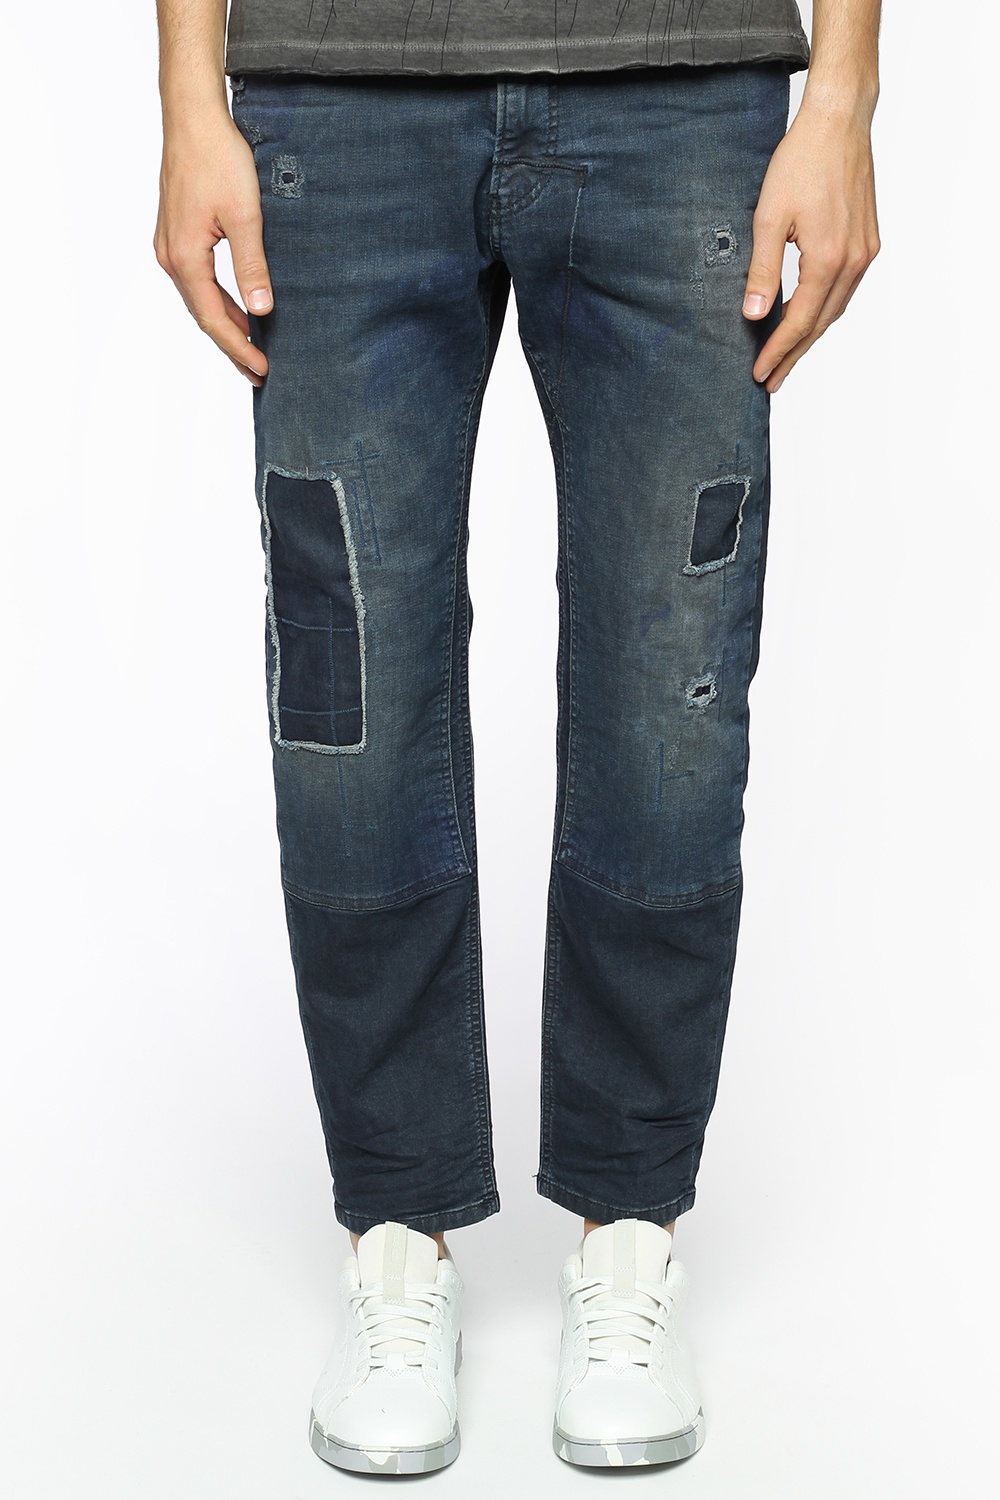 Diesel 'Narrot Cbd-Ne' jeans Men's Clothing Vitkac